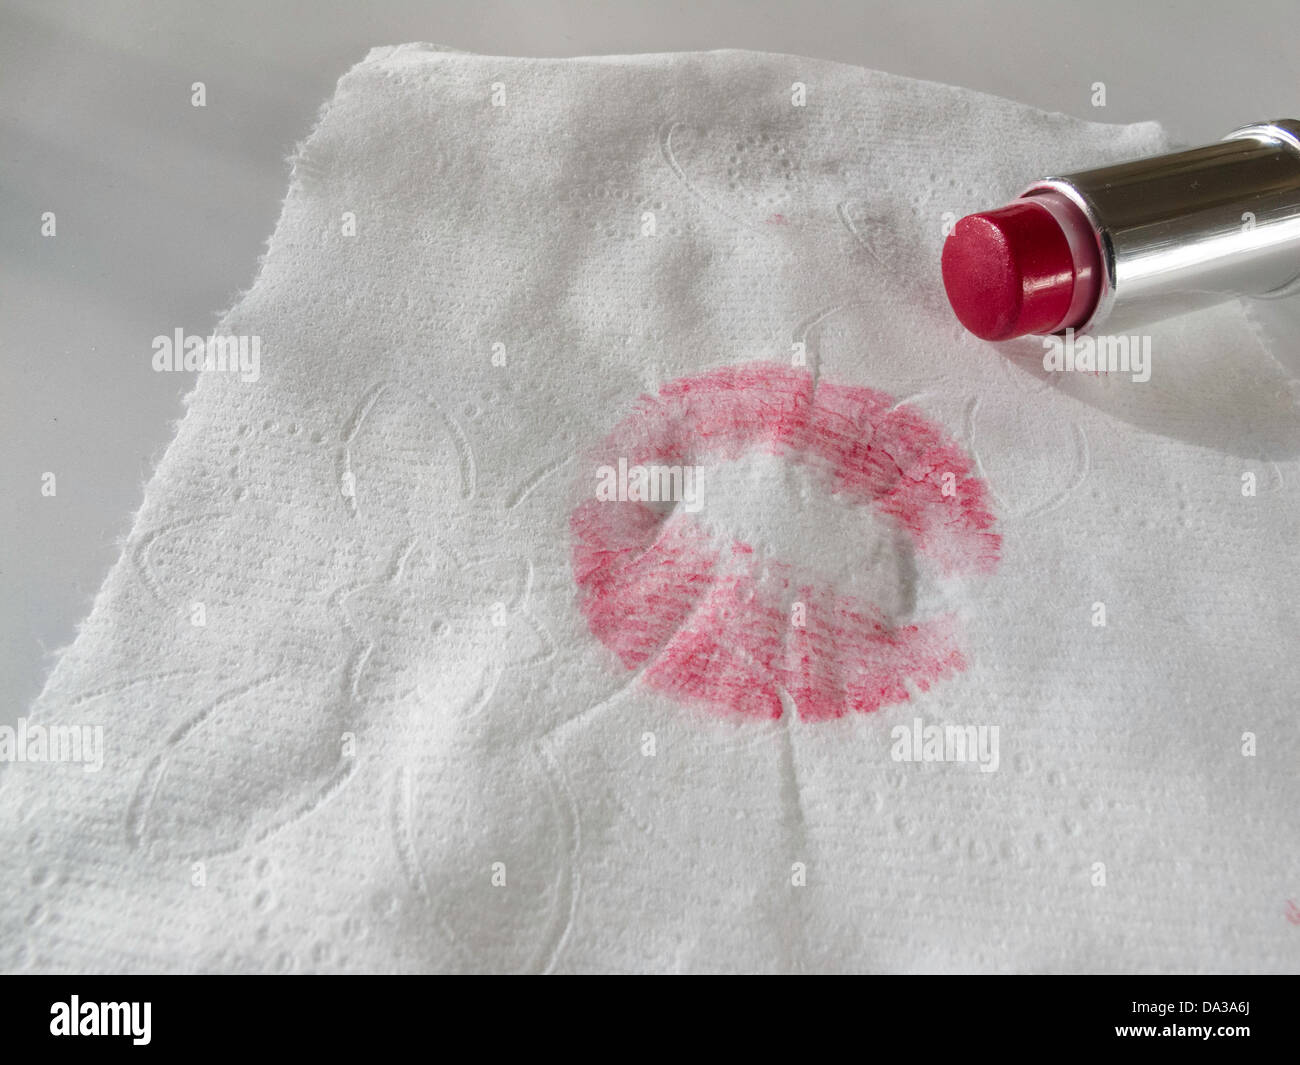 Rossetto rosso blottate su tessuto Foto stock - Alamy